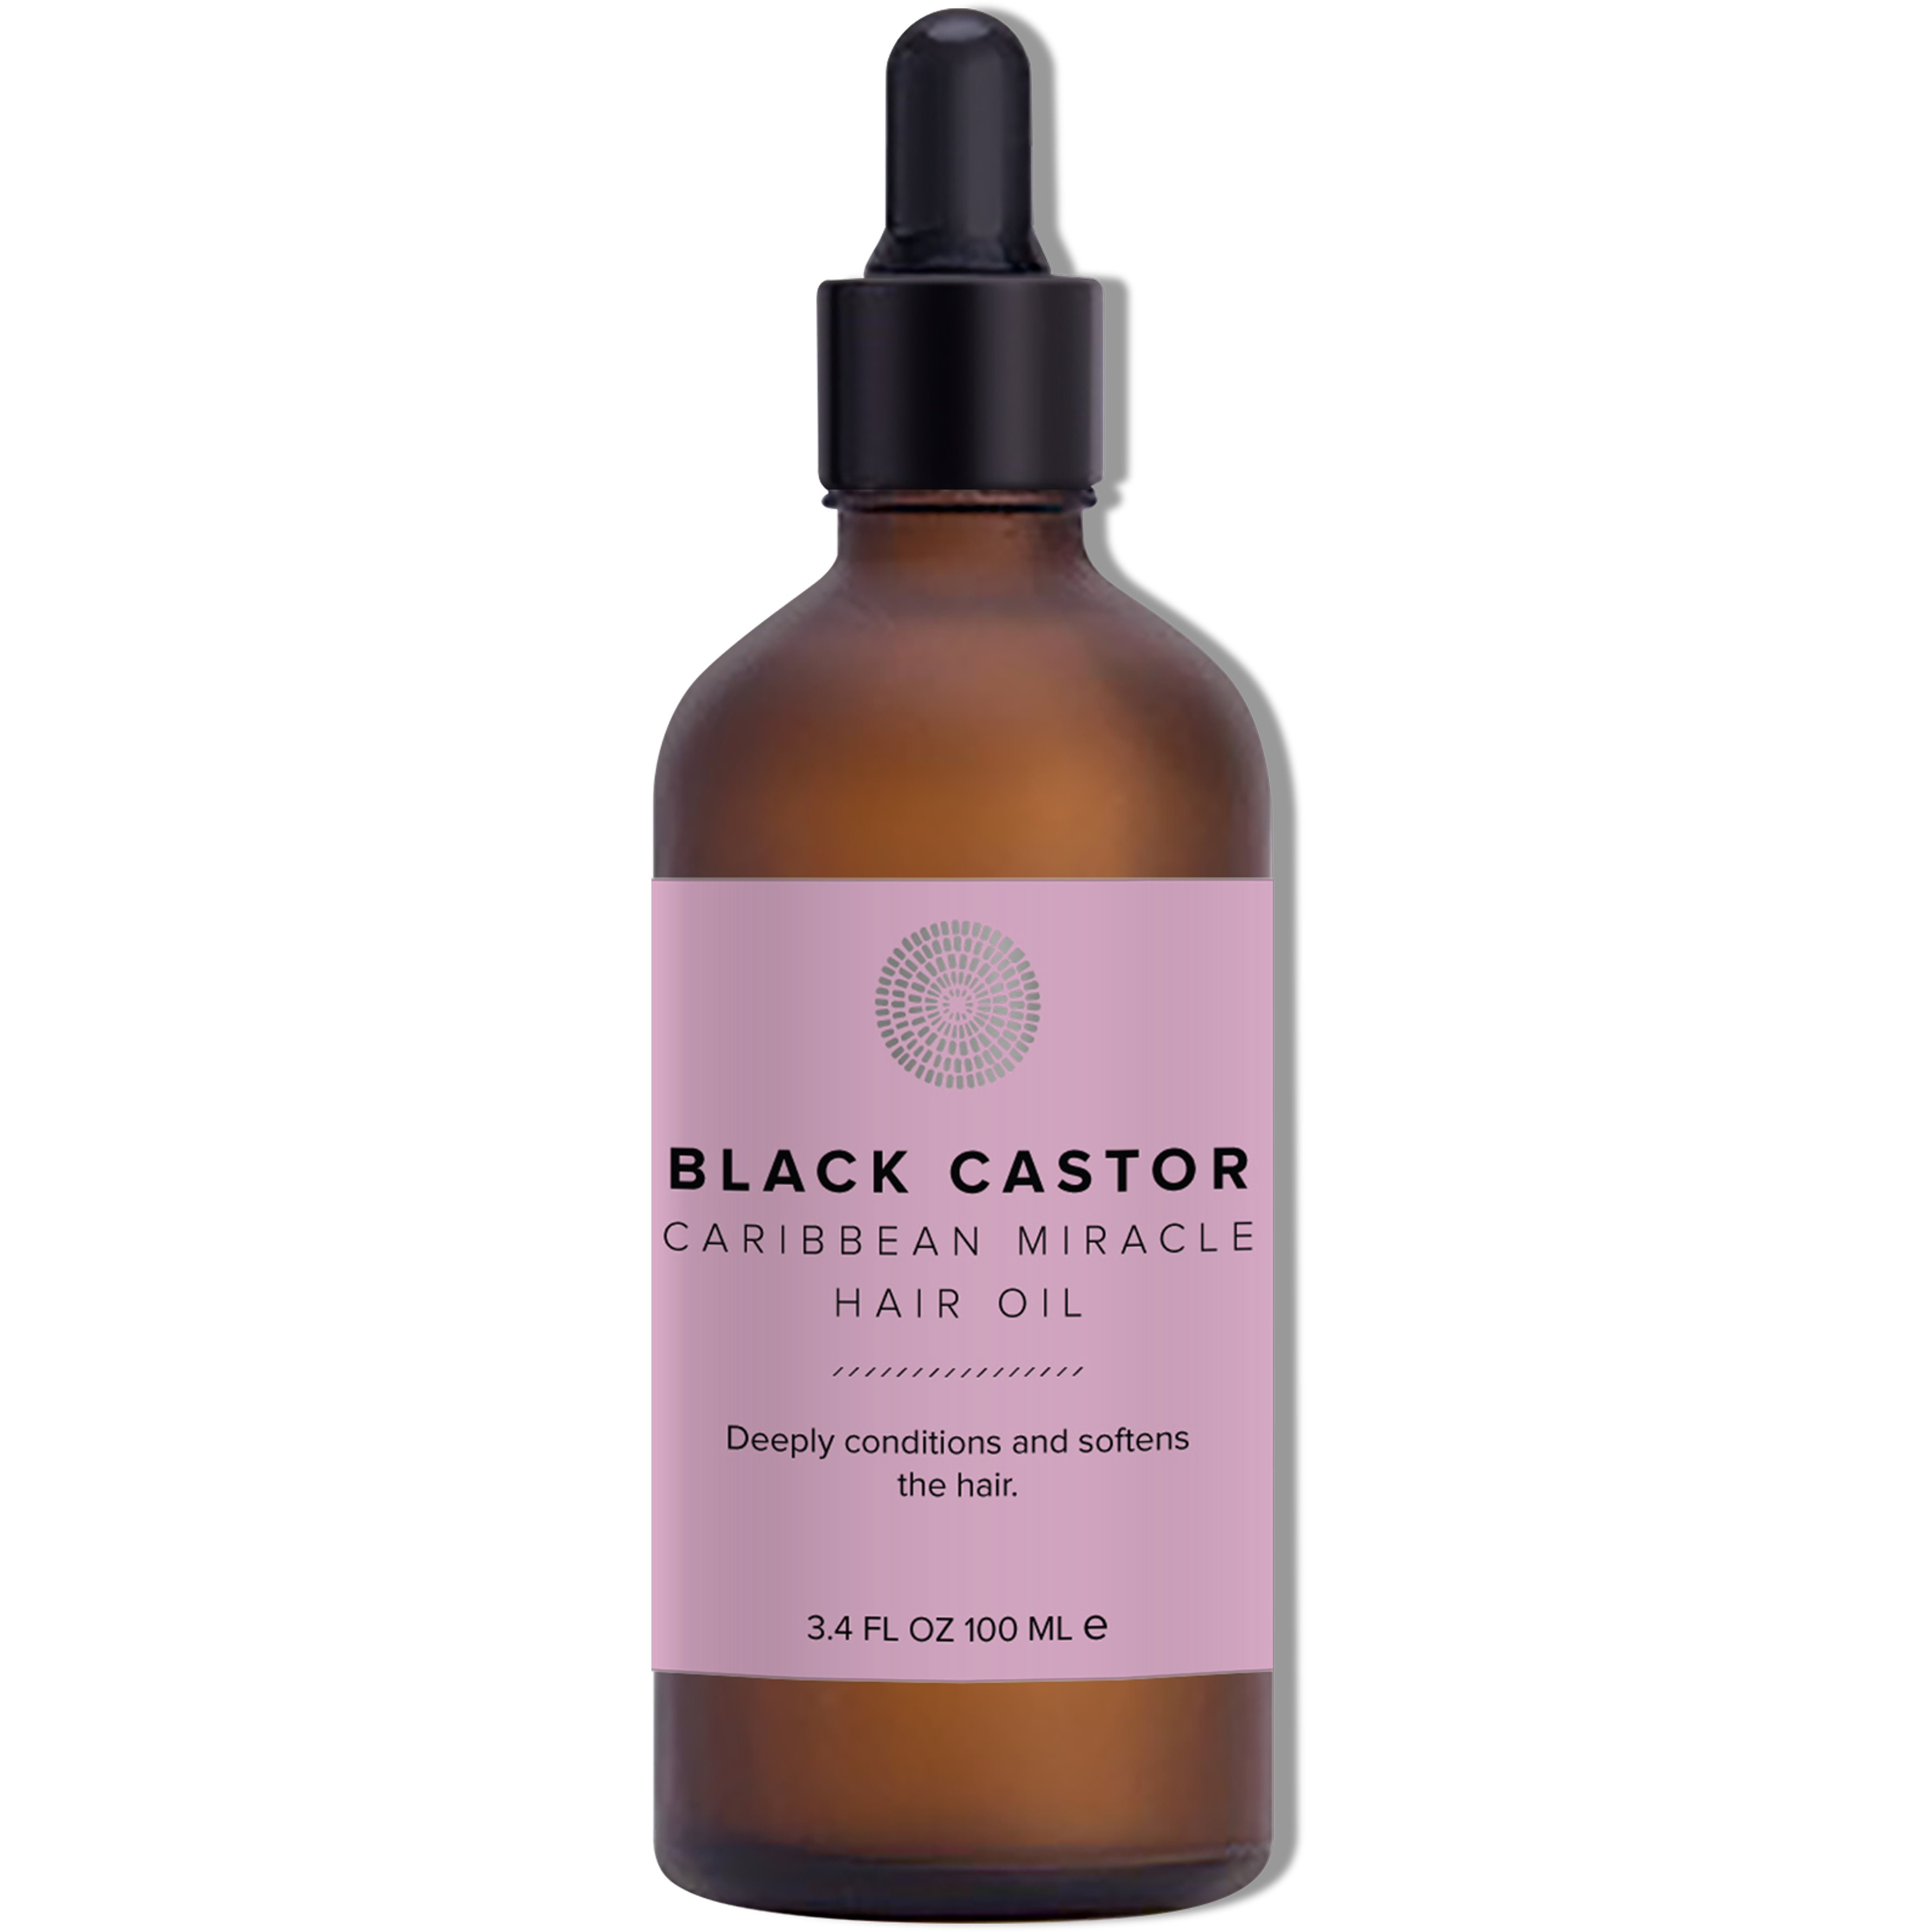 Black Castor Oil